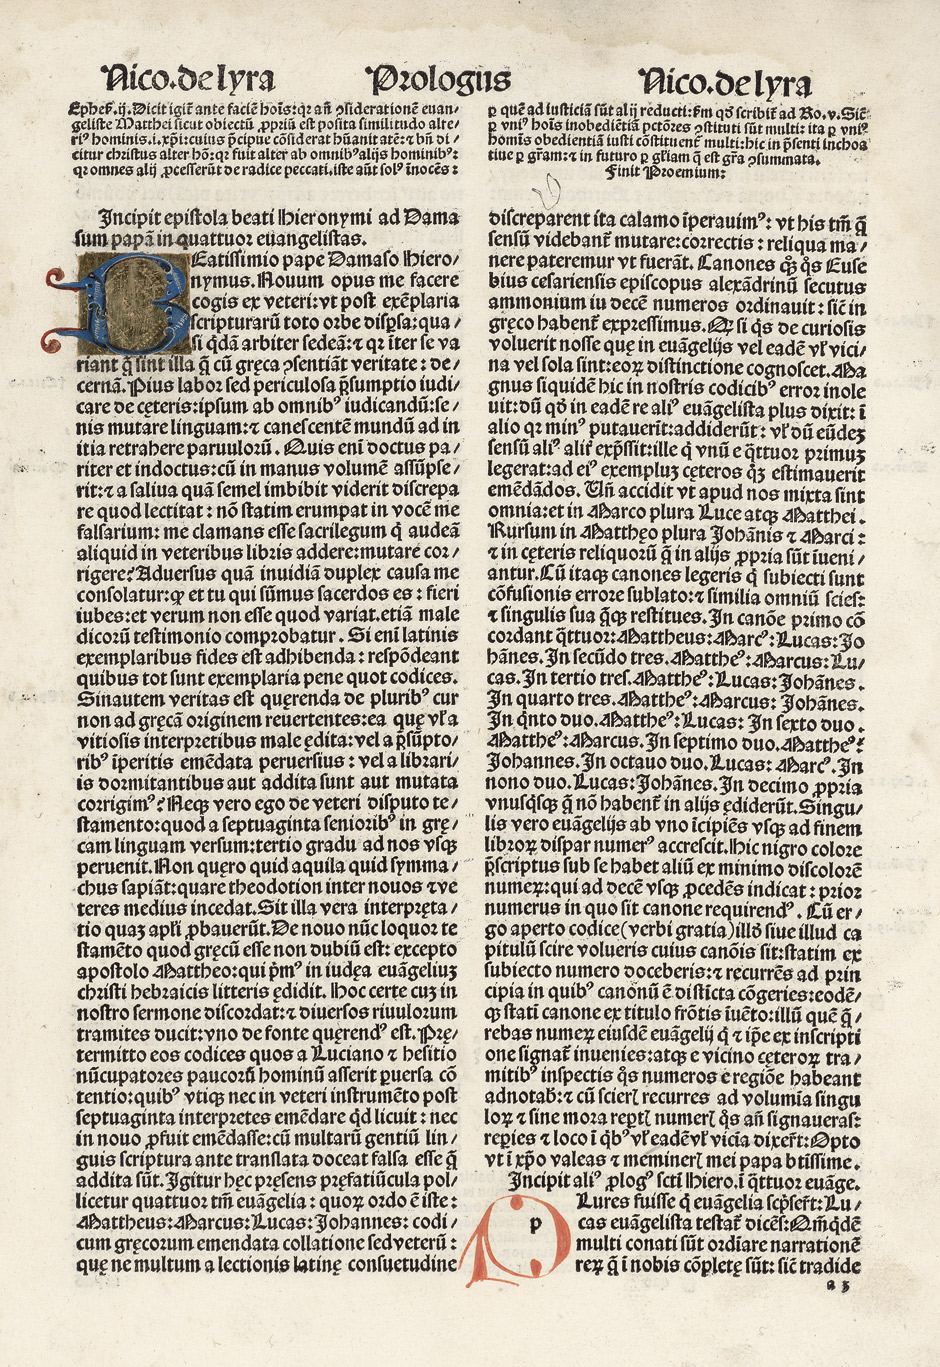 Lot 1072, Auction  115, Biblia latina und Lyra, Nicolaus de, (Quinta) pars huius operis in se continens glosam ordinariam cu expositioe lyre 